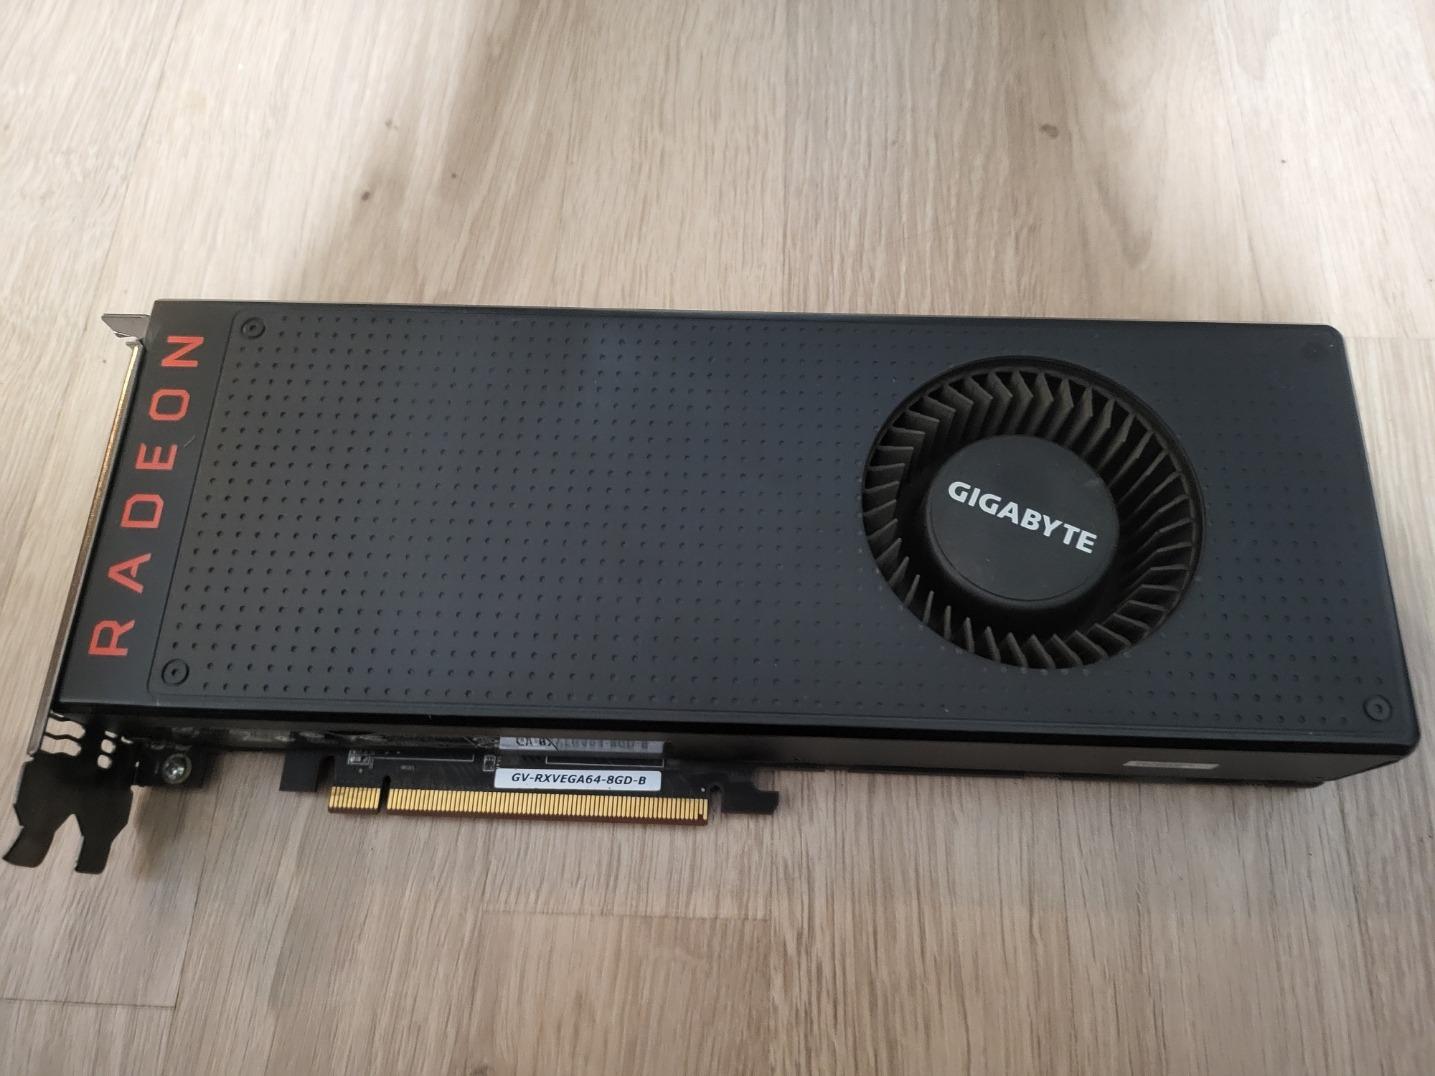 AMD Radeon RX VEGA 64 8G srovantelná s nvidia GTX 1070 - Počítače a hry